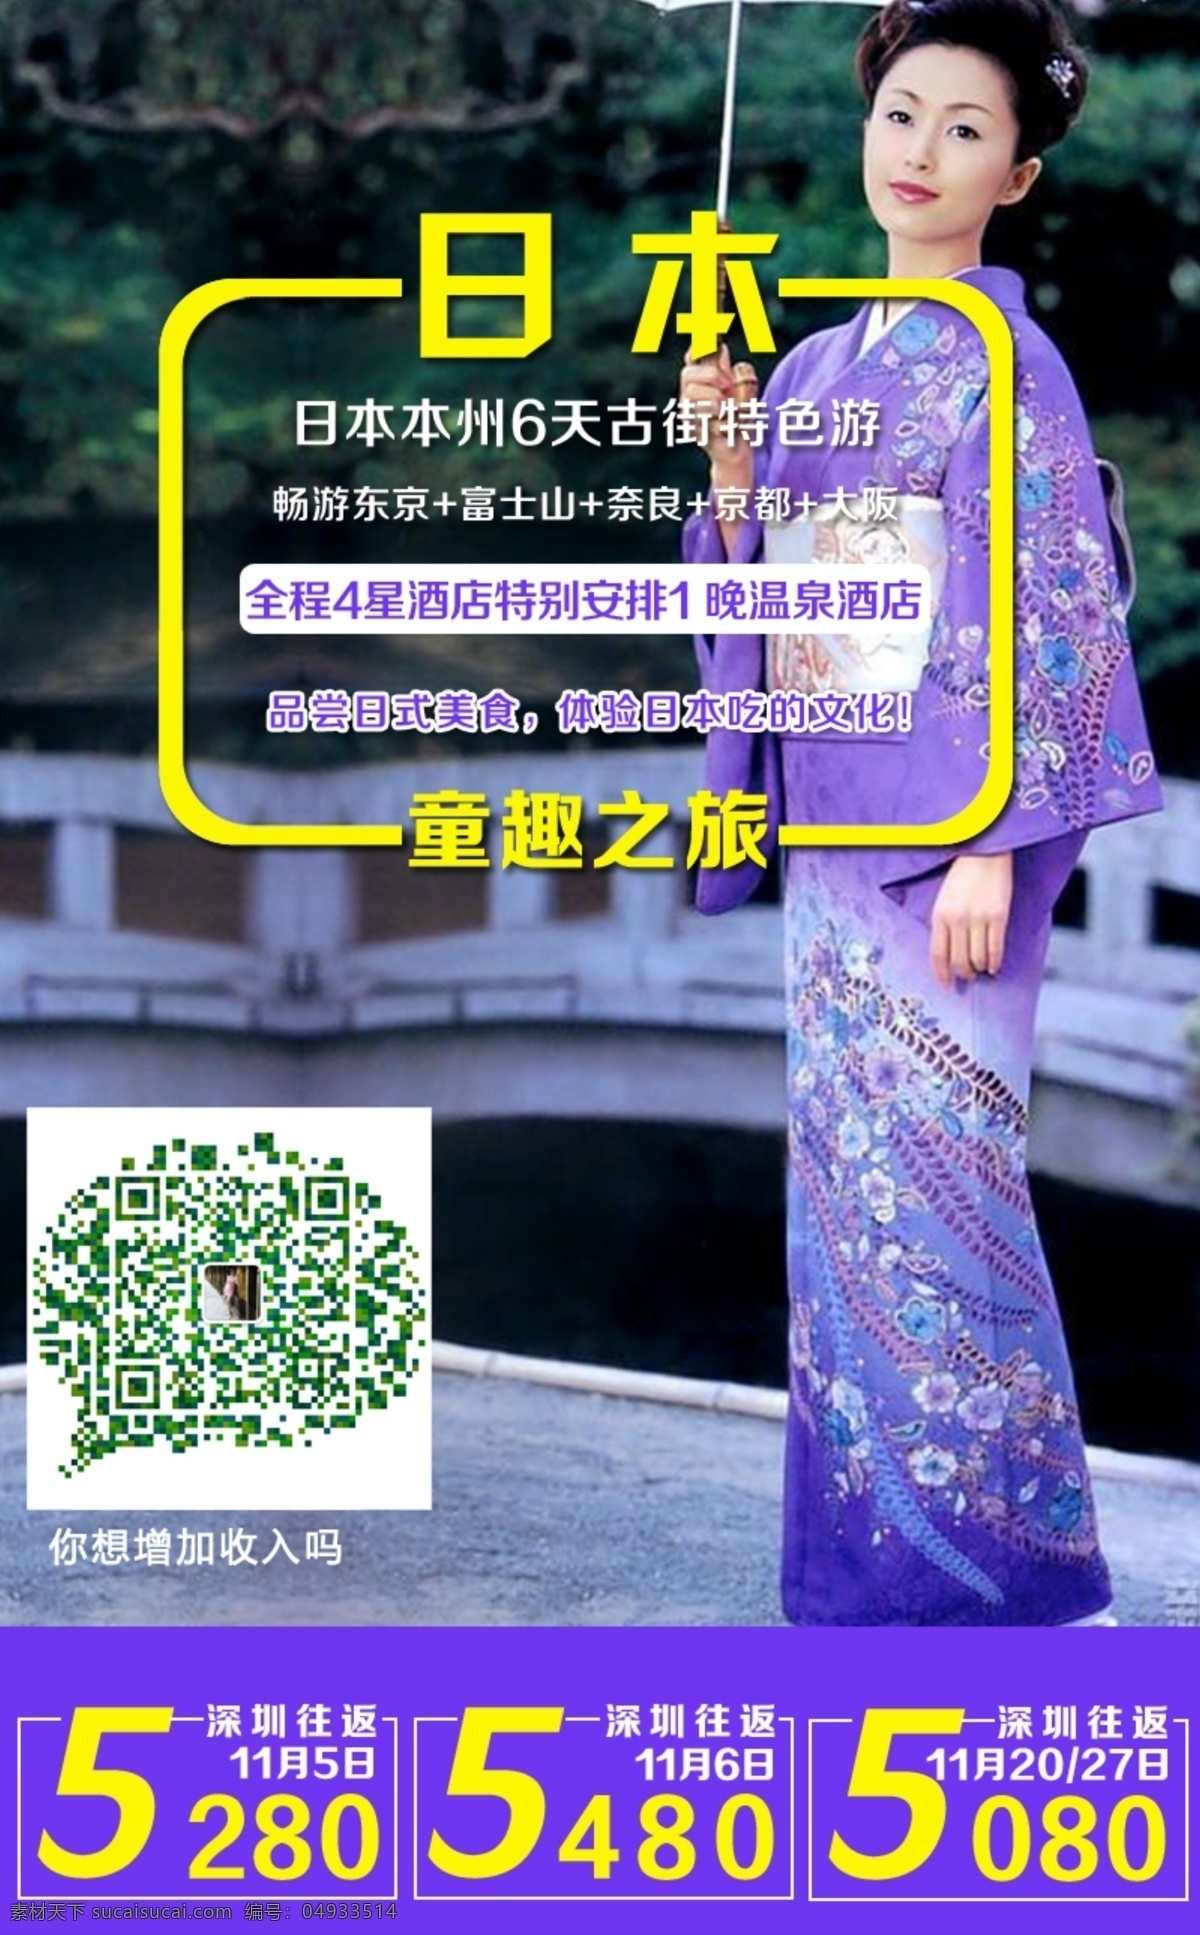 中 之旅 日本旅游 宣传 广告 日本 团 游 幽 梦 轩 枫叶之旅 国外游